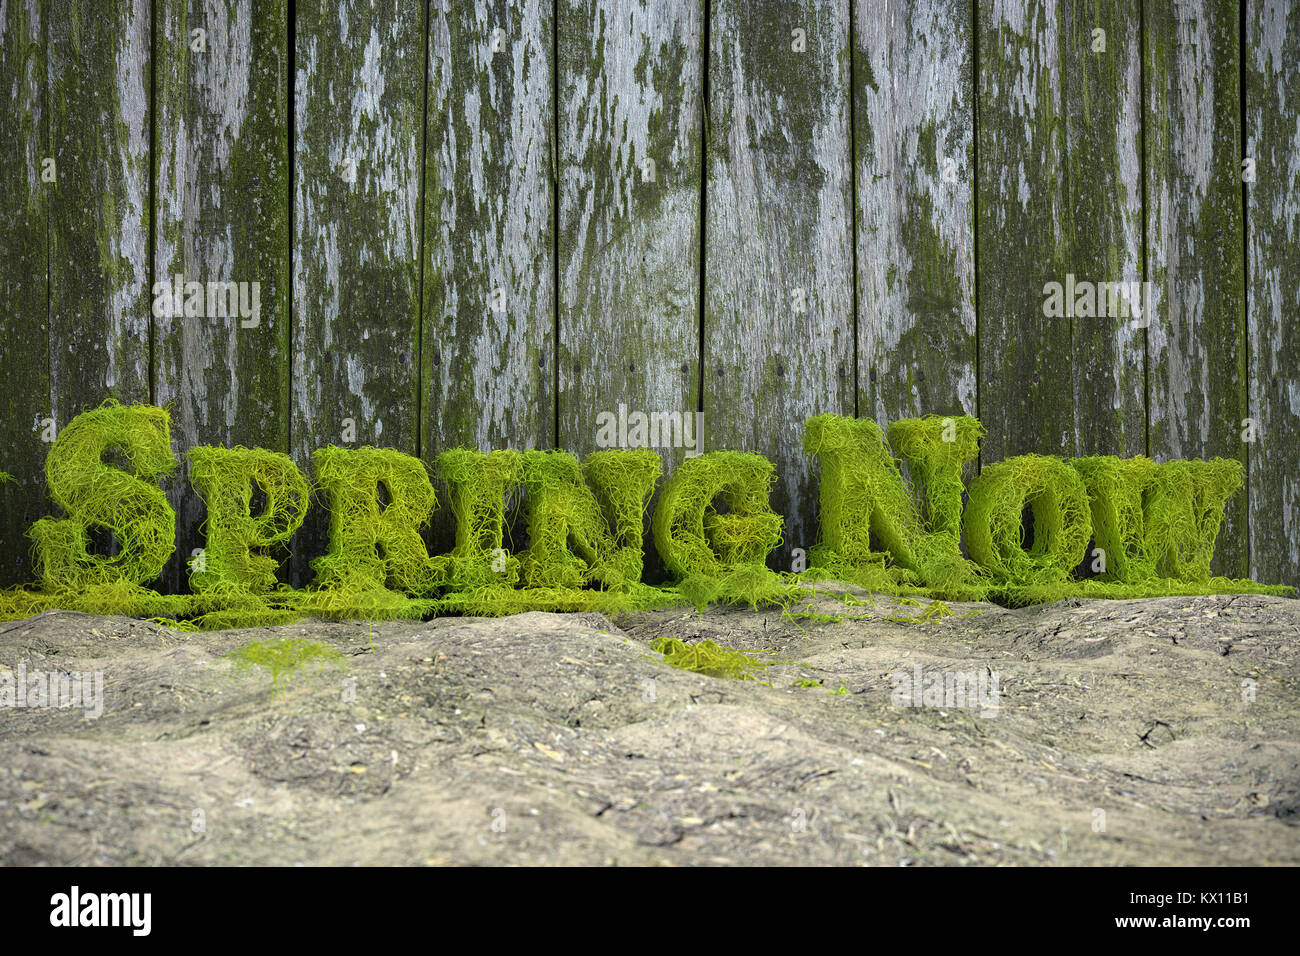 3D-Rendering von frischem grünen Frühling jetzt Text von Efeu Ästen gebildet Ggeen alten hölzernen Zaun Stockfoto